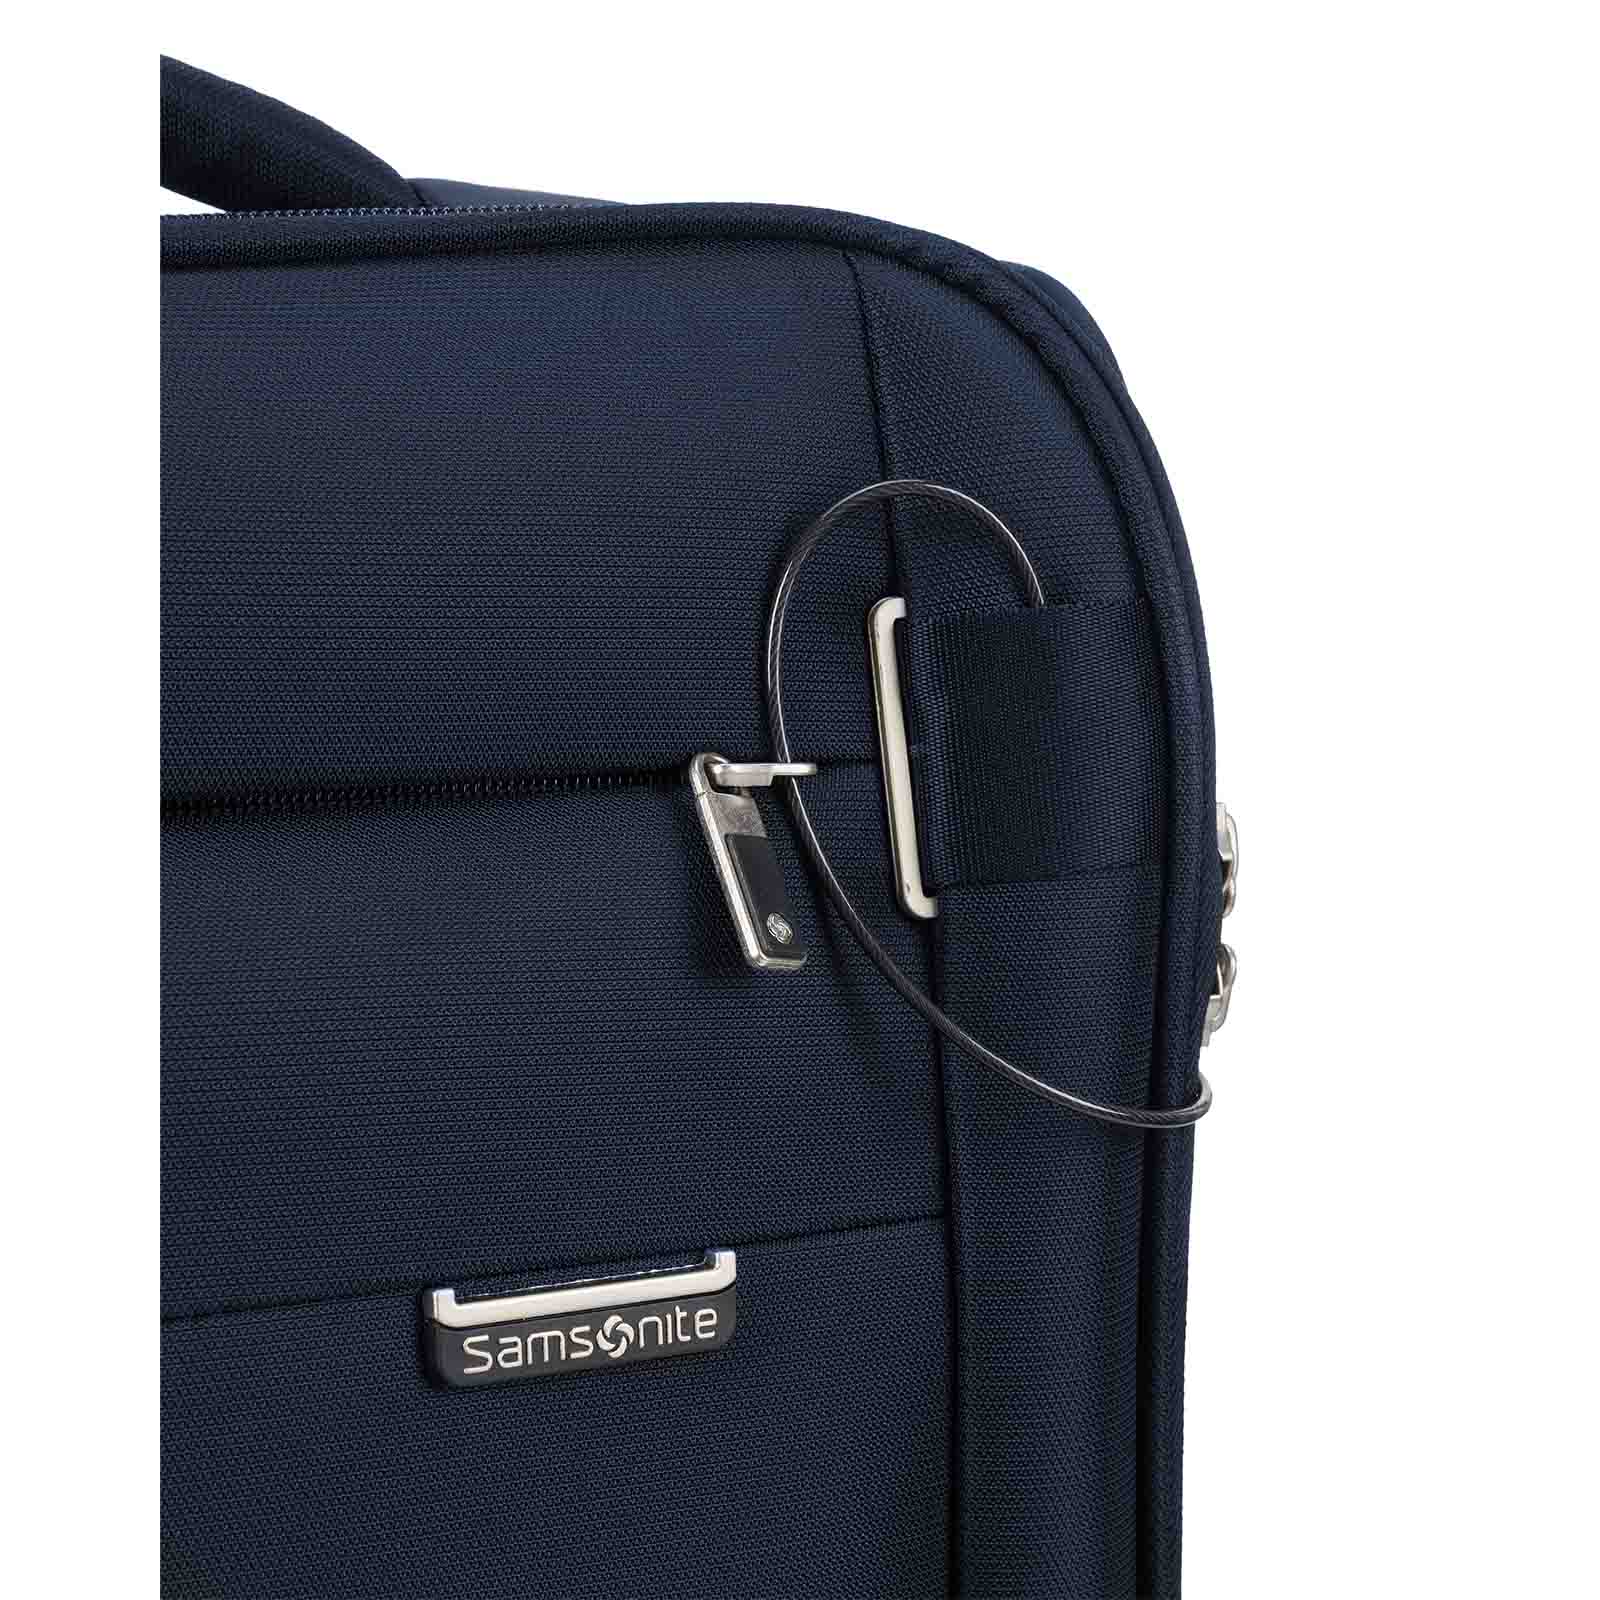 Samsonite-City-Rhythm-Carry-On-55cm-Suitcase-Navy-Logo